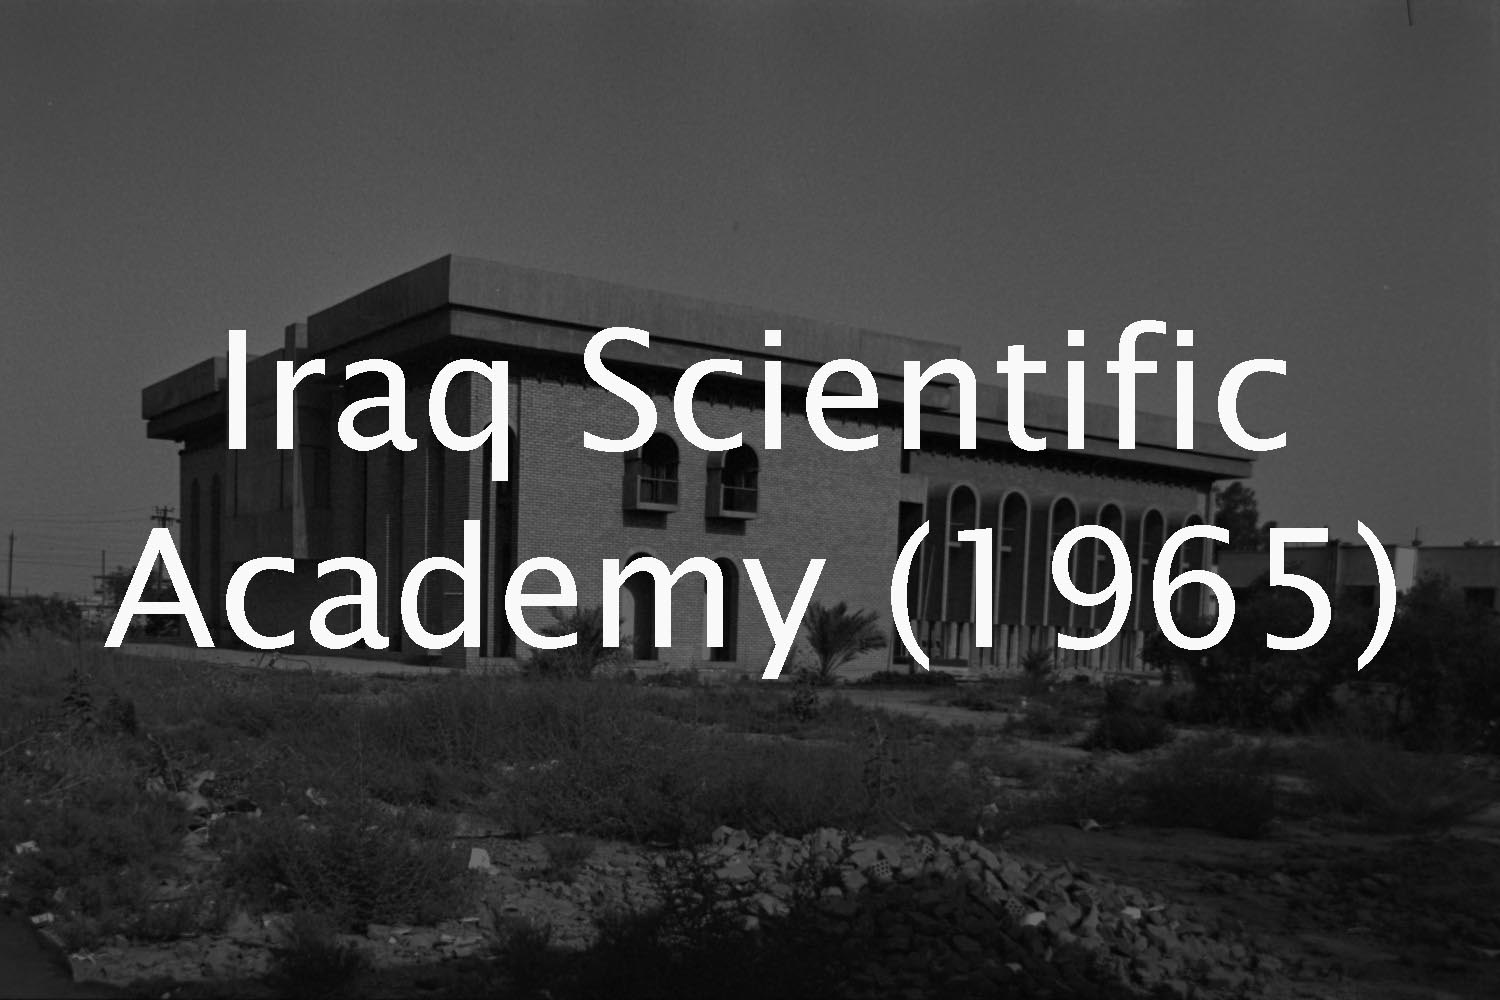 Iraq Scientific Academy (Rifat Chadirji Archive)